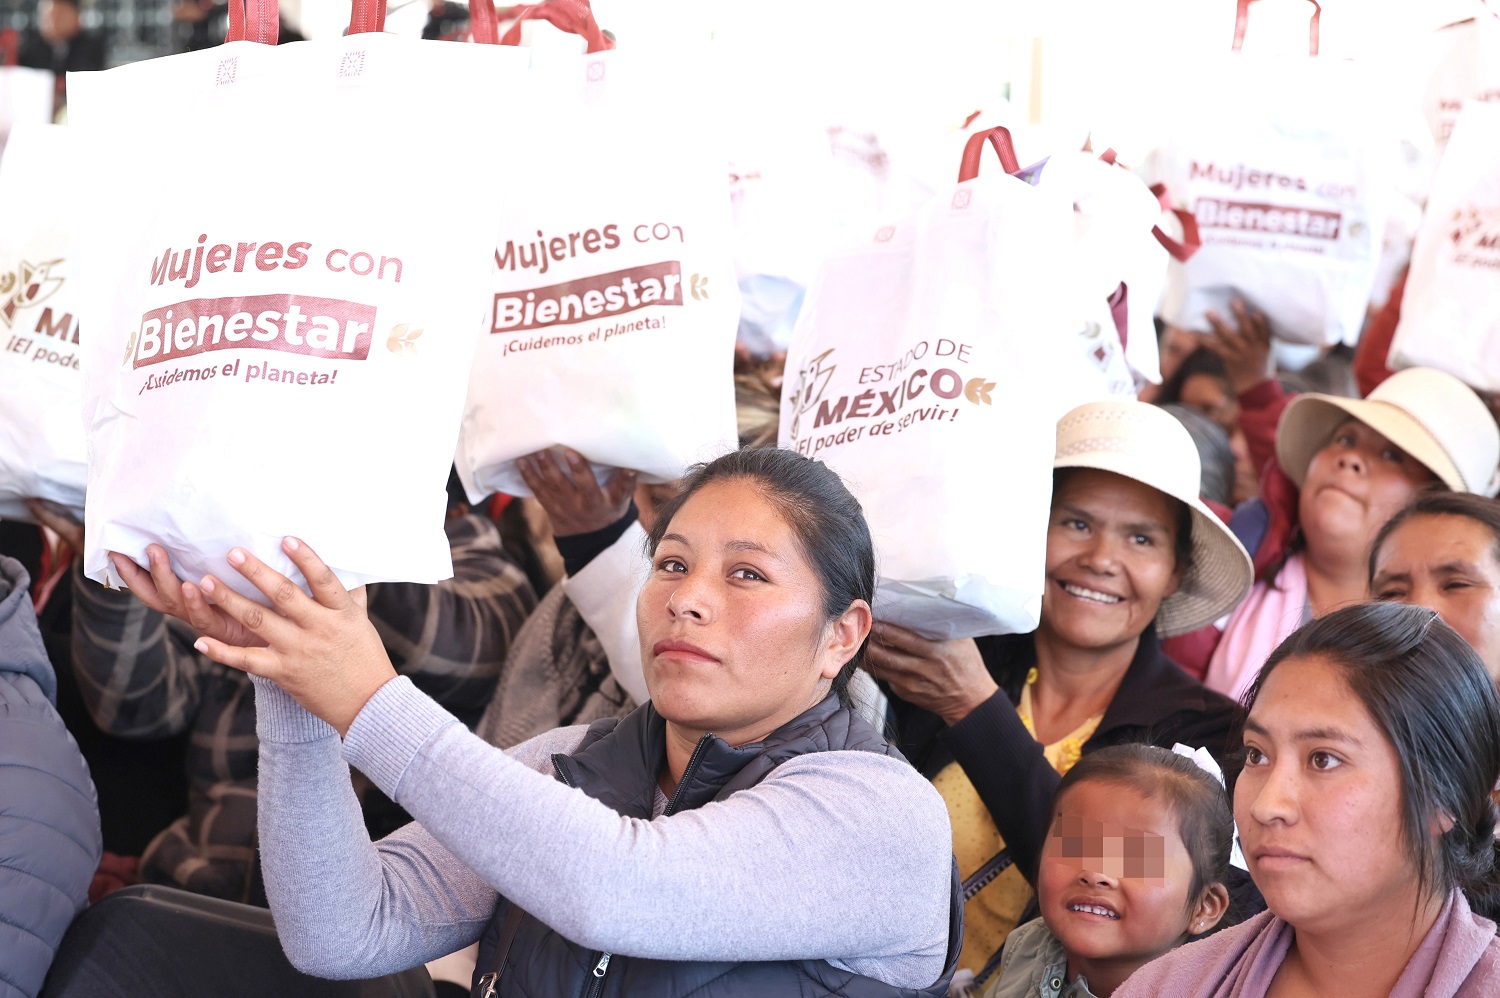 La Gobernadora Delfina Gómez lleva el Programa “Mujeres con Bienestar” a San Felipe del Progreso; entrega 22 mil tarjetas y canastas alimentarias